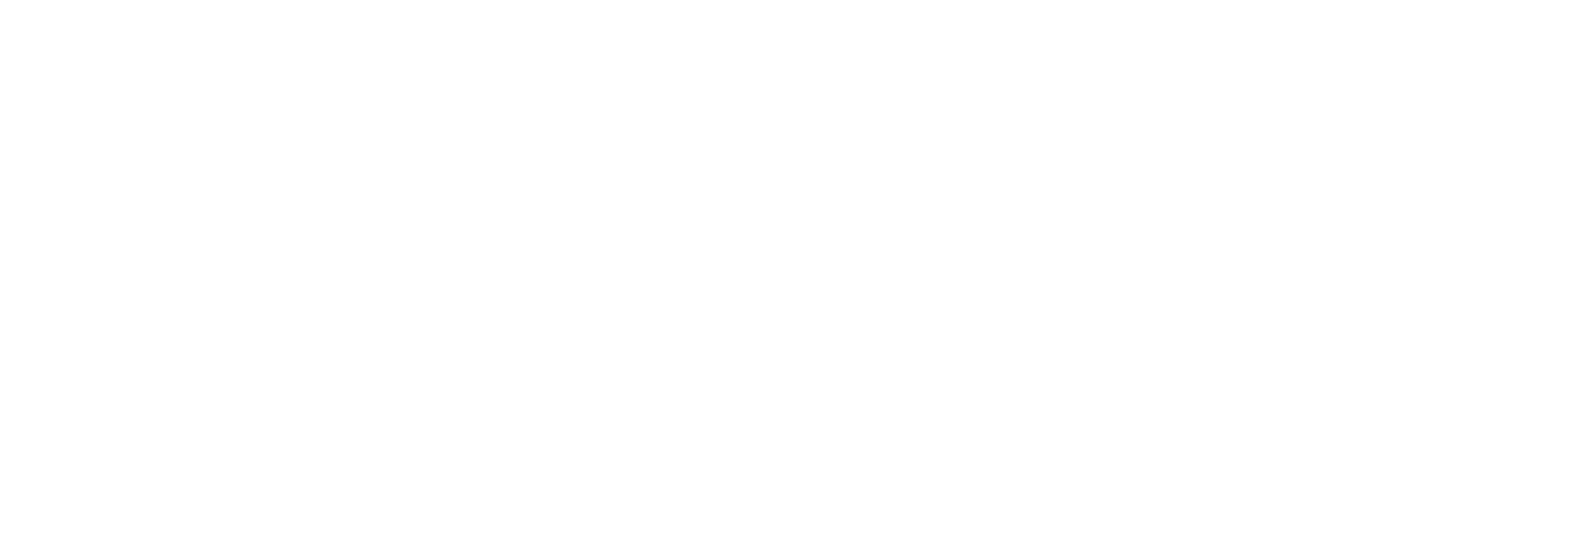 British American Tobacco Logo groß für dunkle Hintergründe (transparentes PNG)